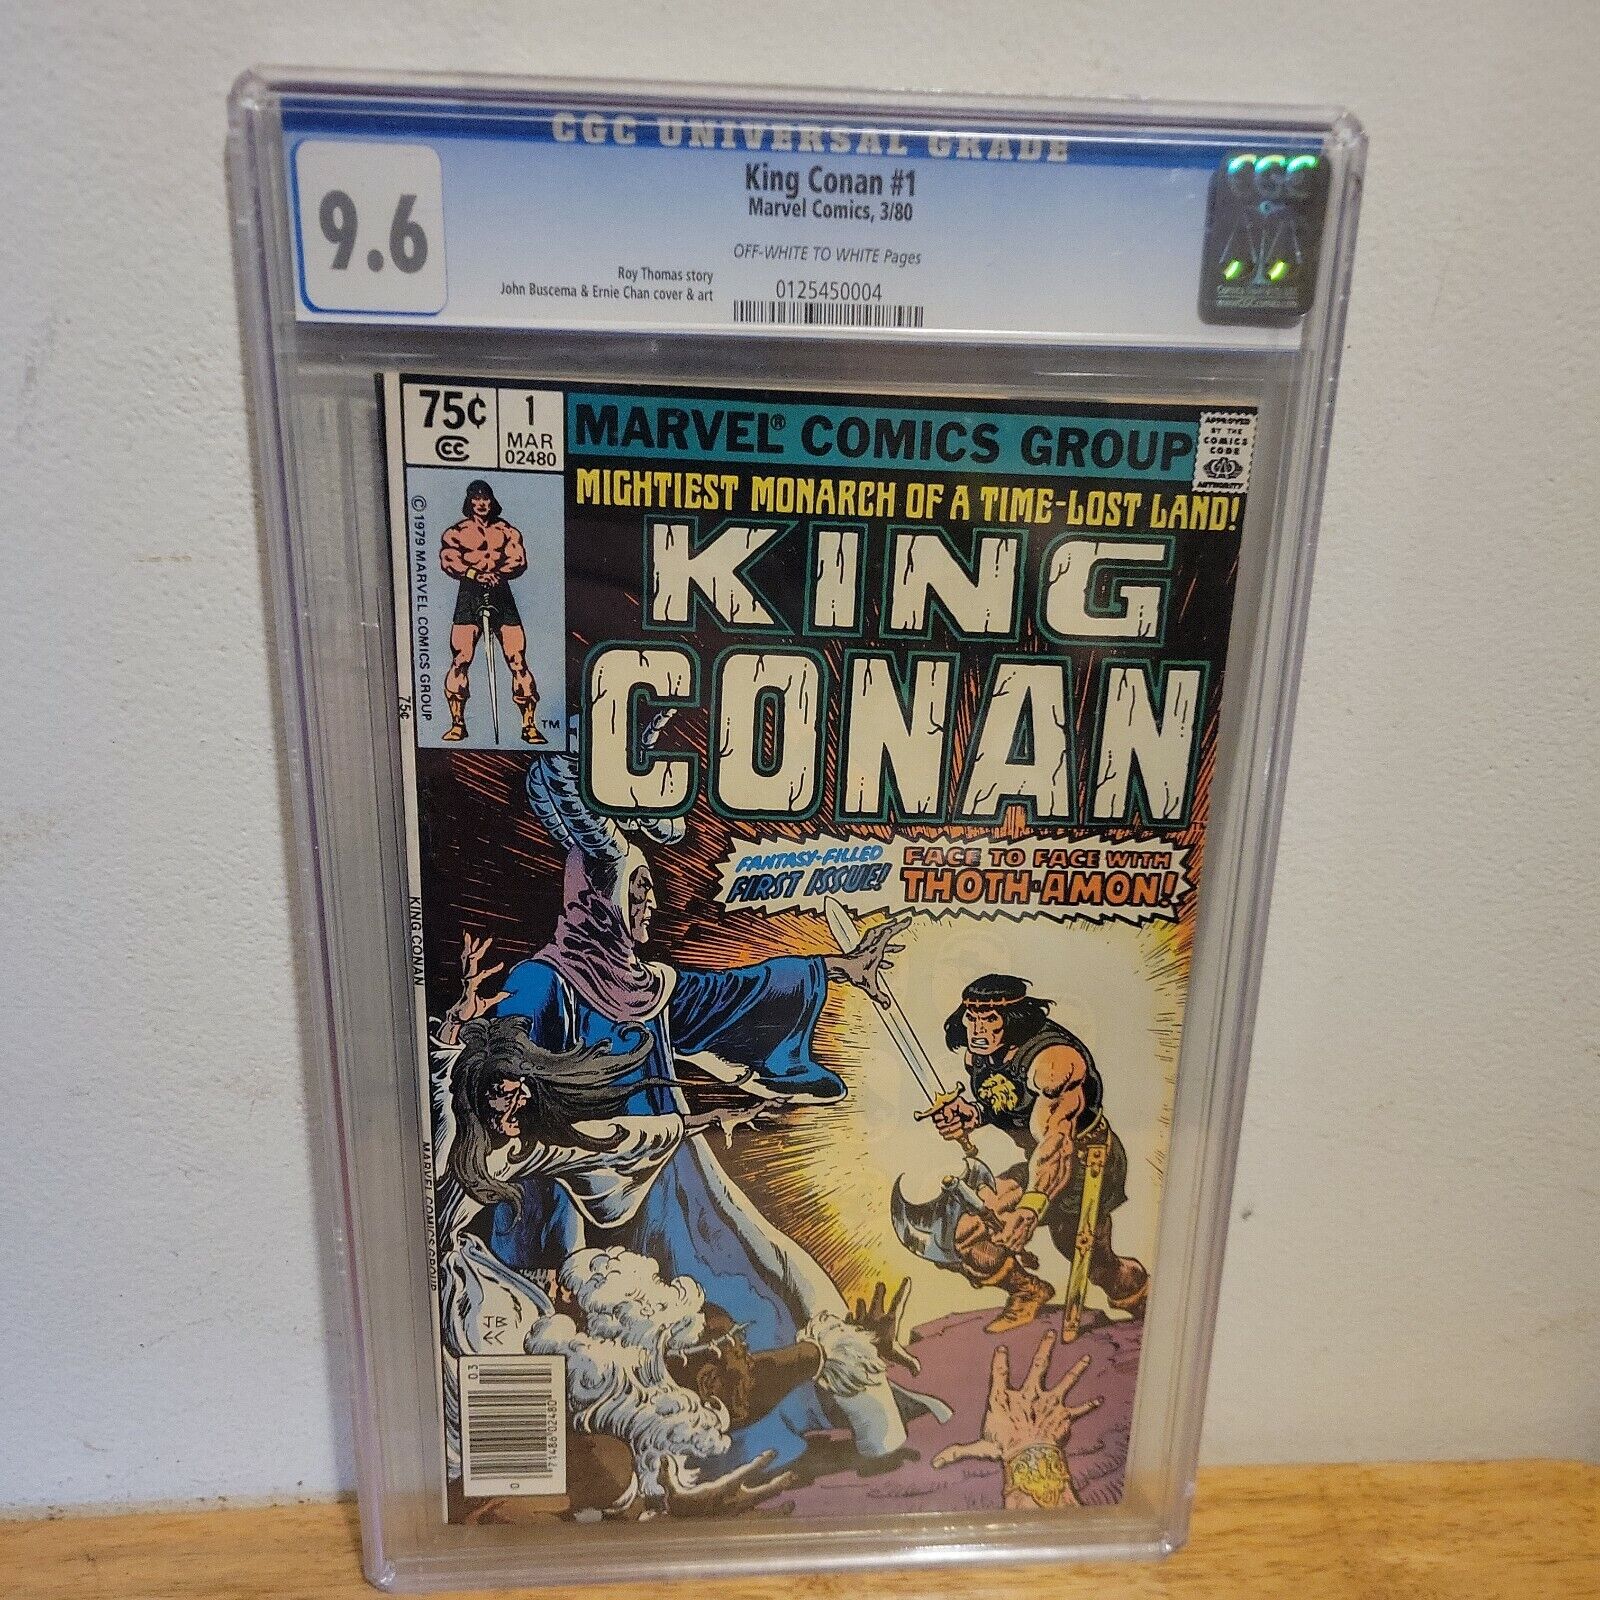 King Conan #1 CGC 9.6 John Buscema & Ernie Chan Cover& Art 1980